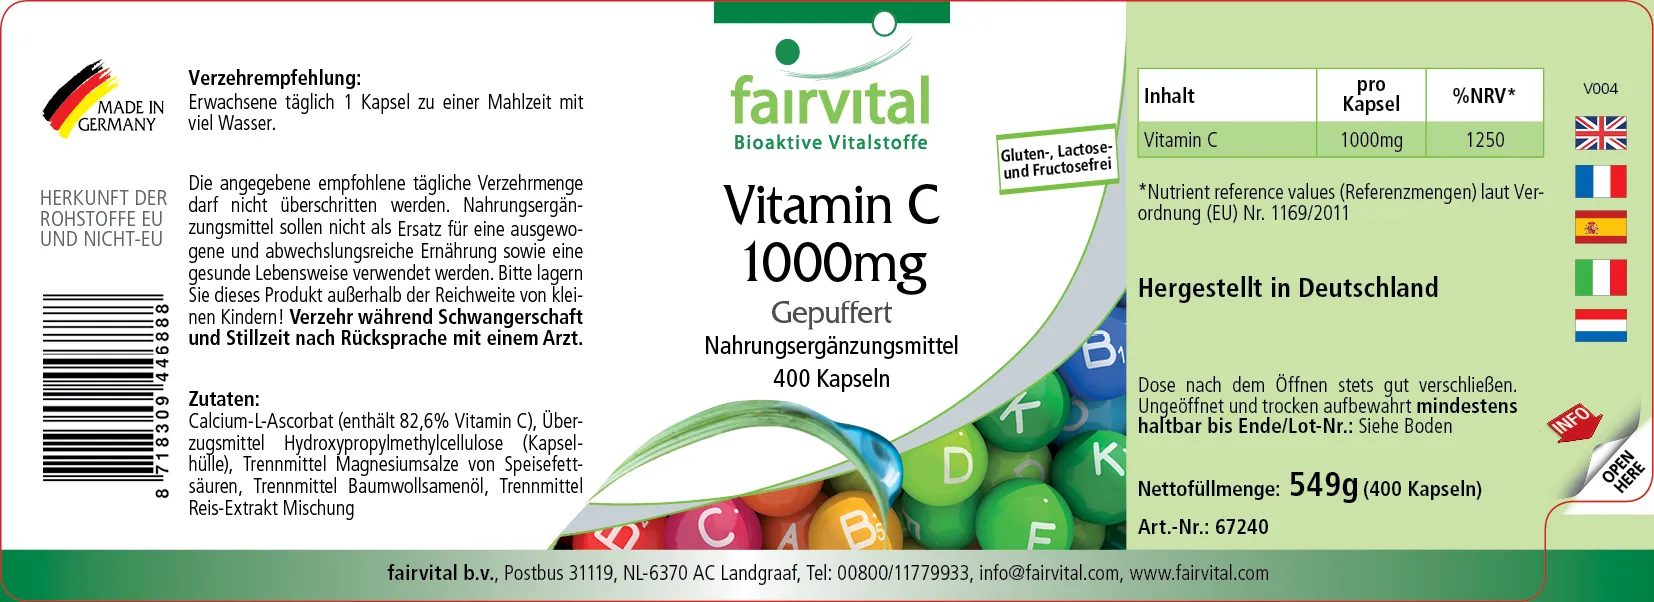 Vitamine C 1000mg in gebufferde vorm - 400 capsules